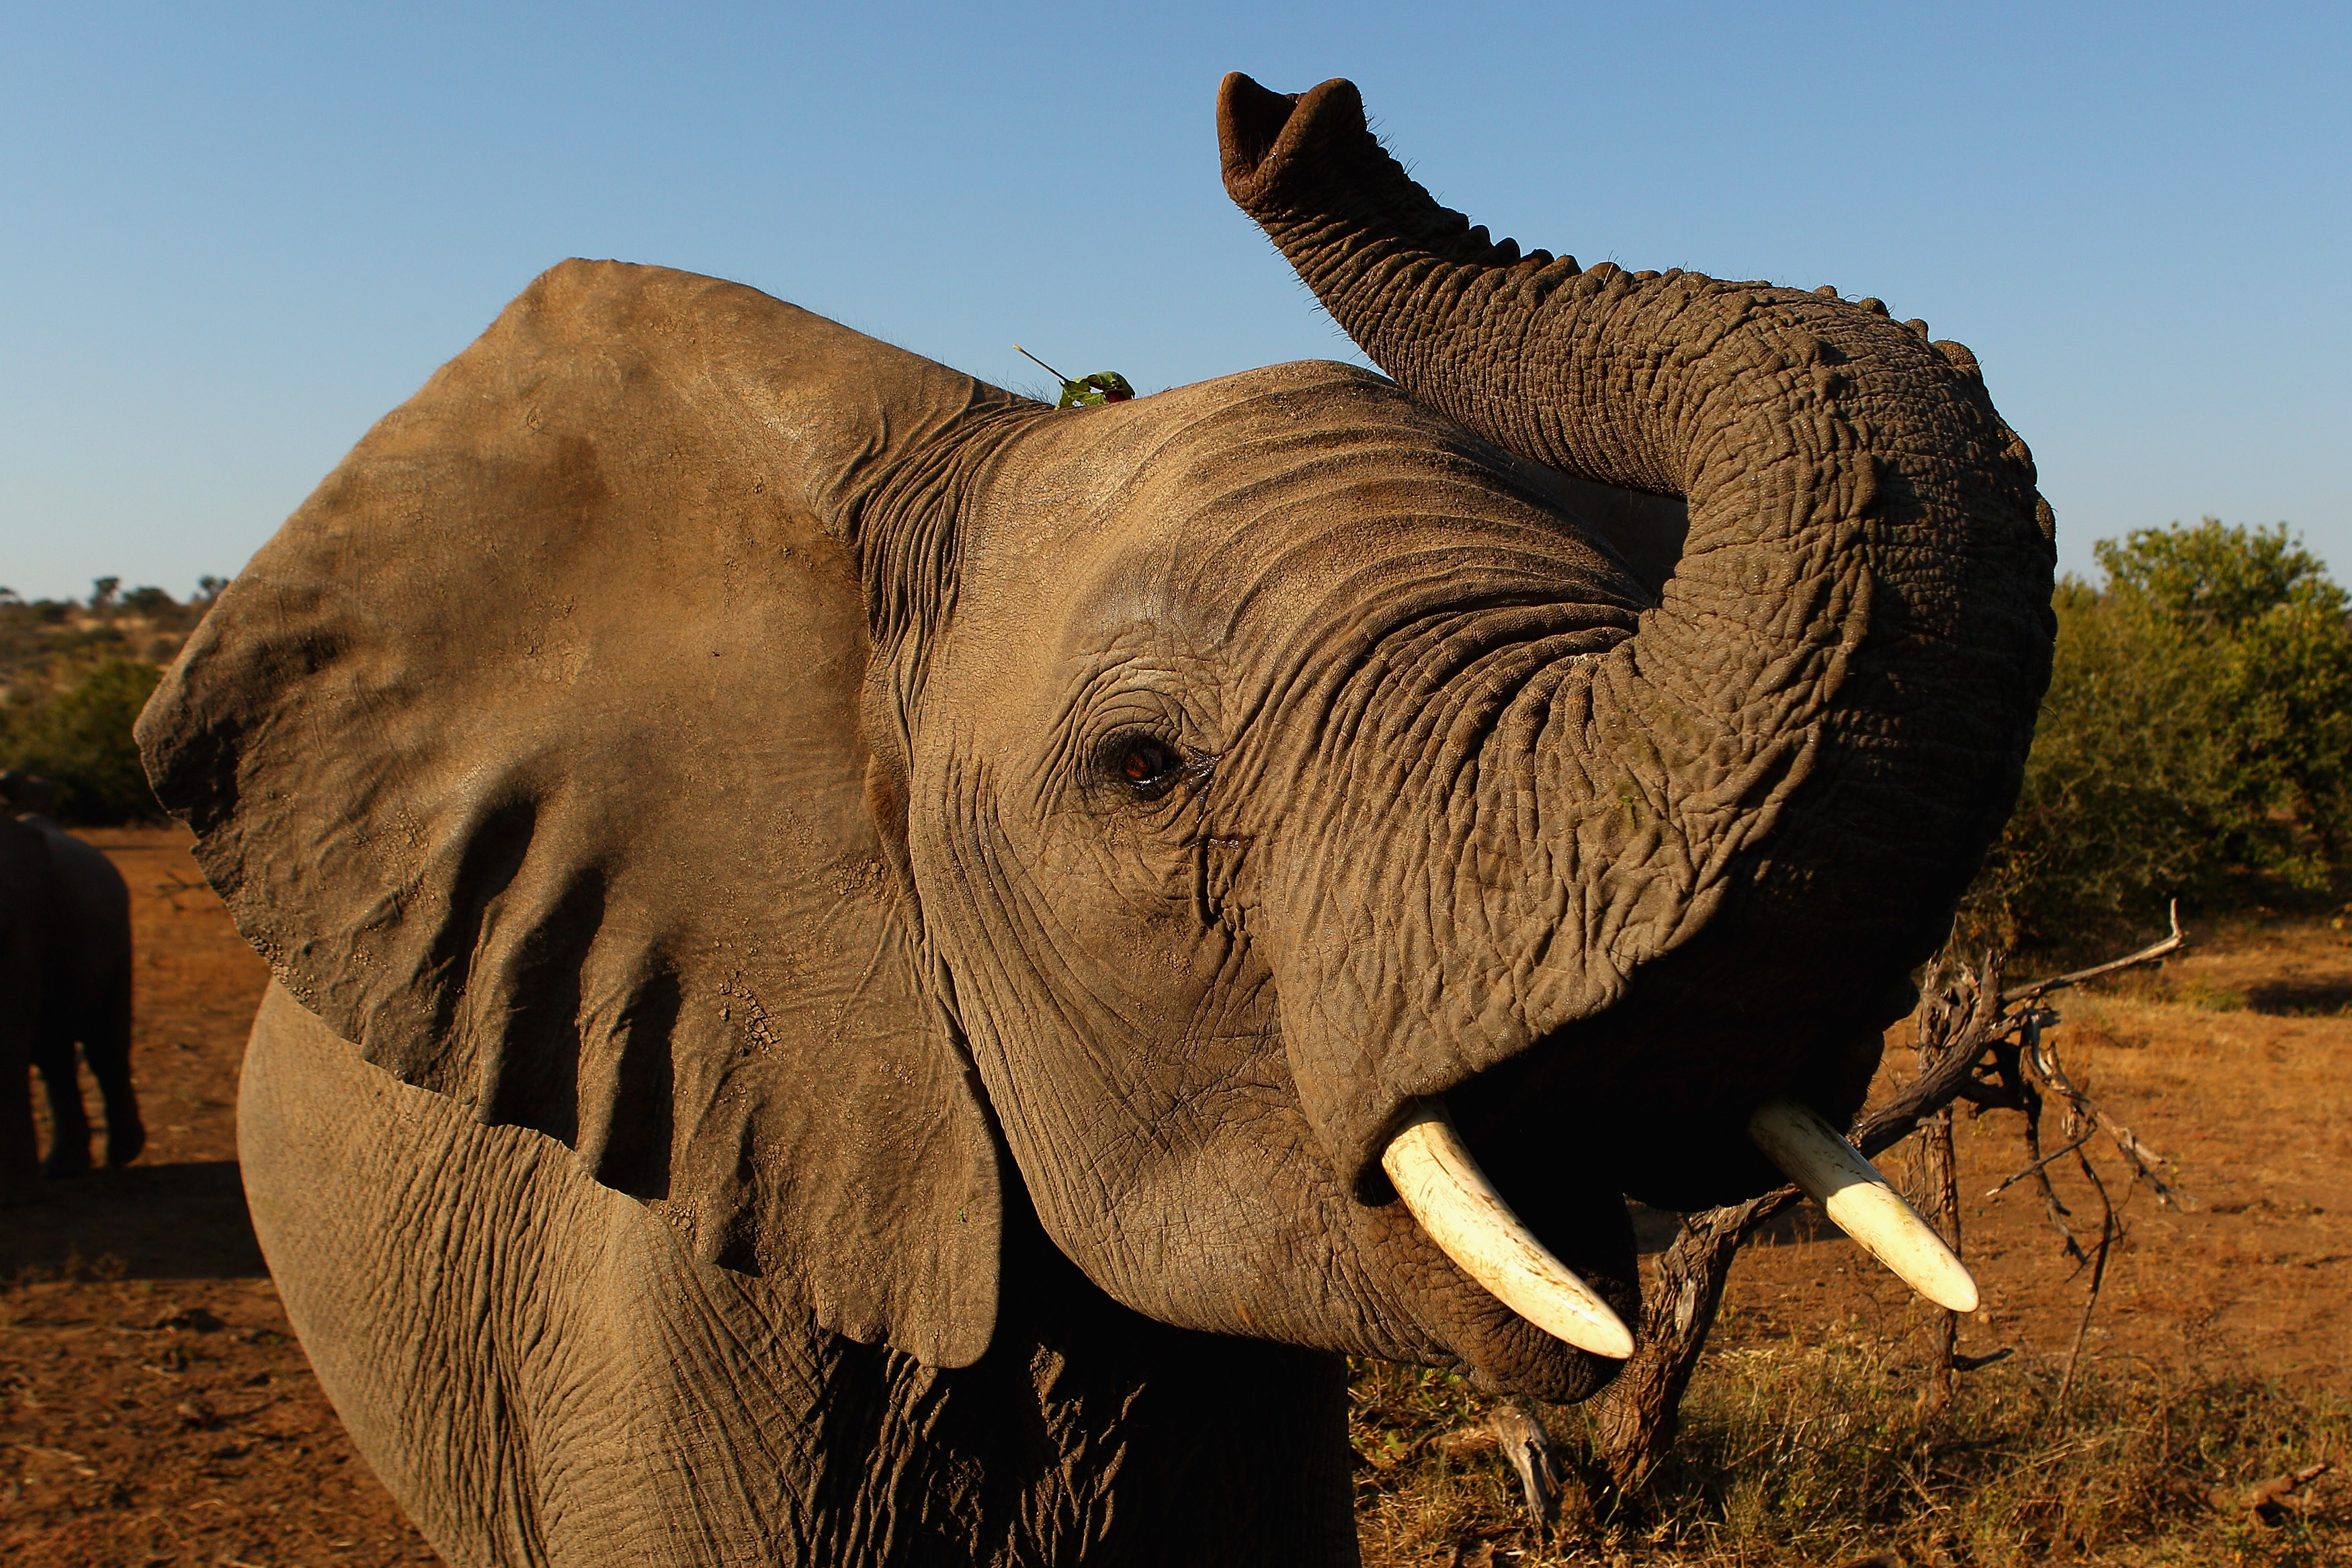 ivory ban elephant